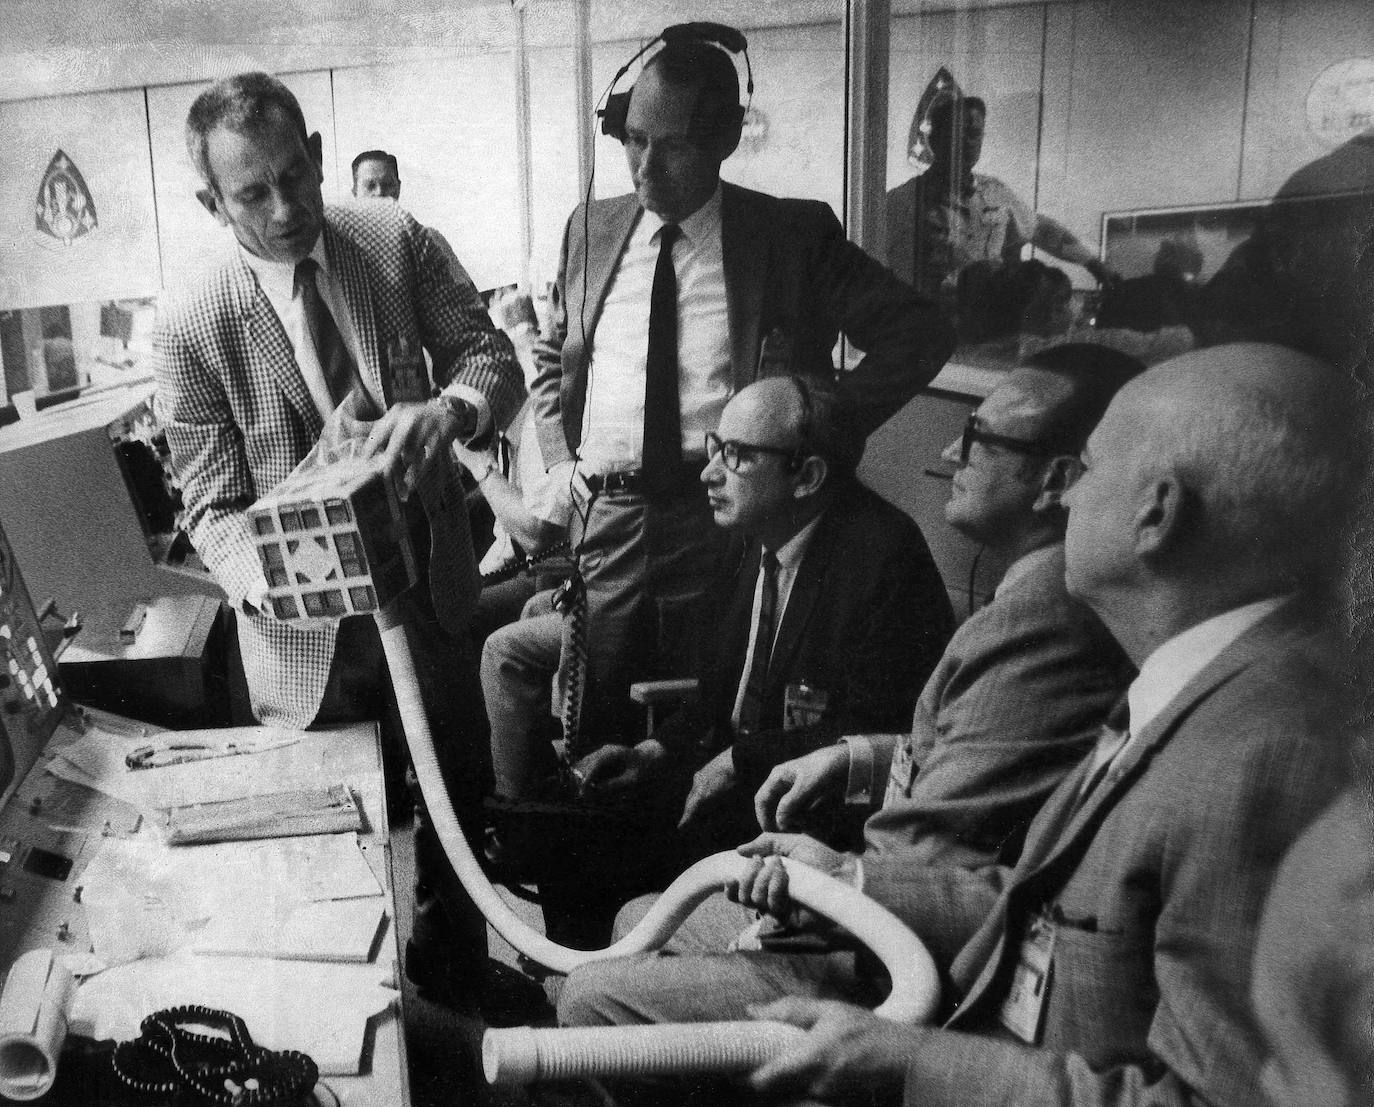 Donald Slayton (i) muestra a otros dirigentes de la NASA la canasta de hidróxico de litio, provista de una manguera, que se utilizará para que puedan respirar los tripulantes del Apolo 13.